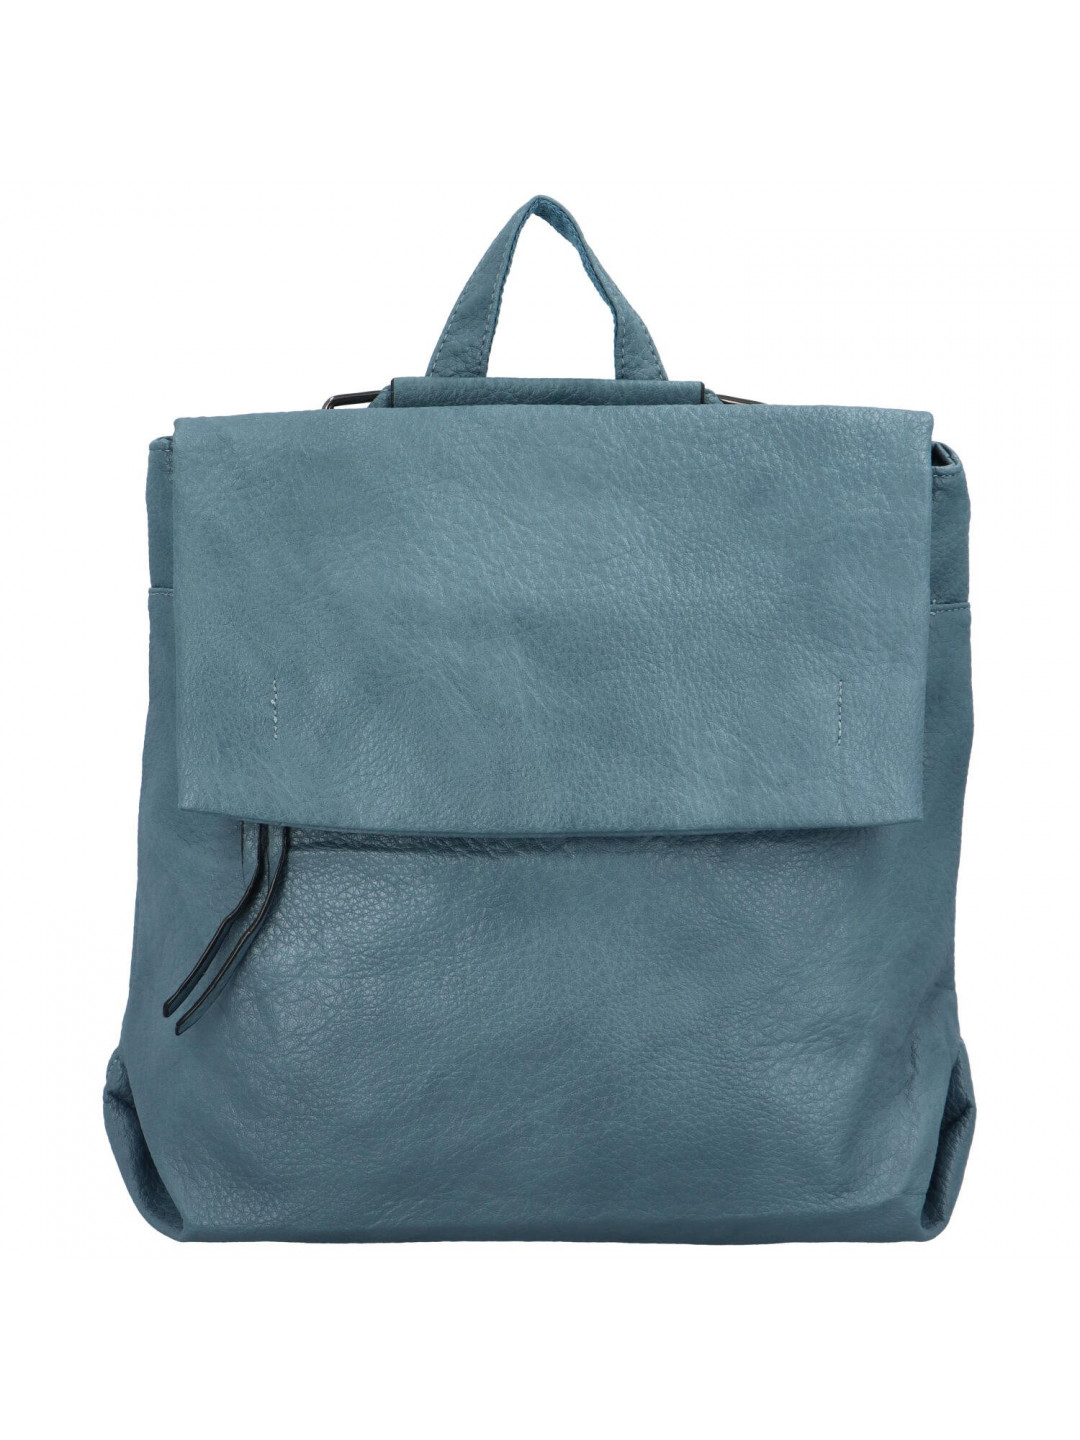 Stylový městský dámský koženkový batoh Sonleada světle modrá